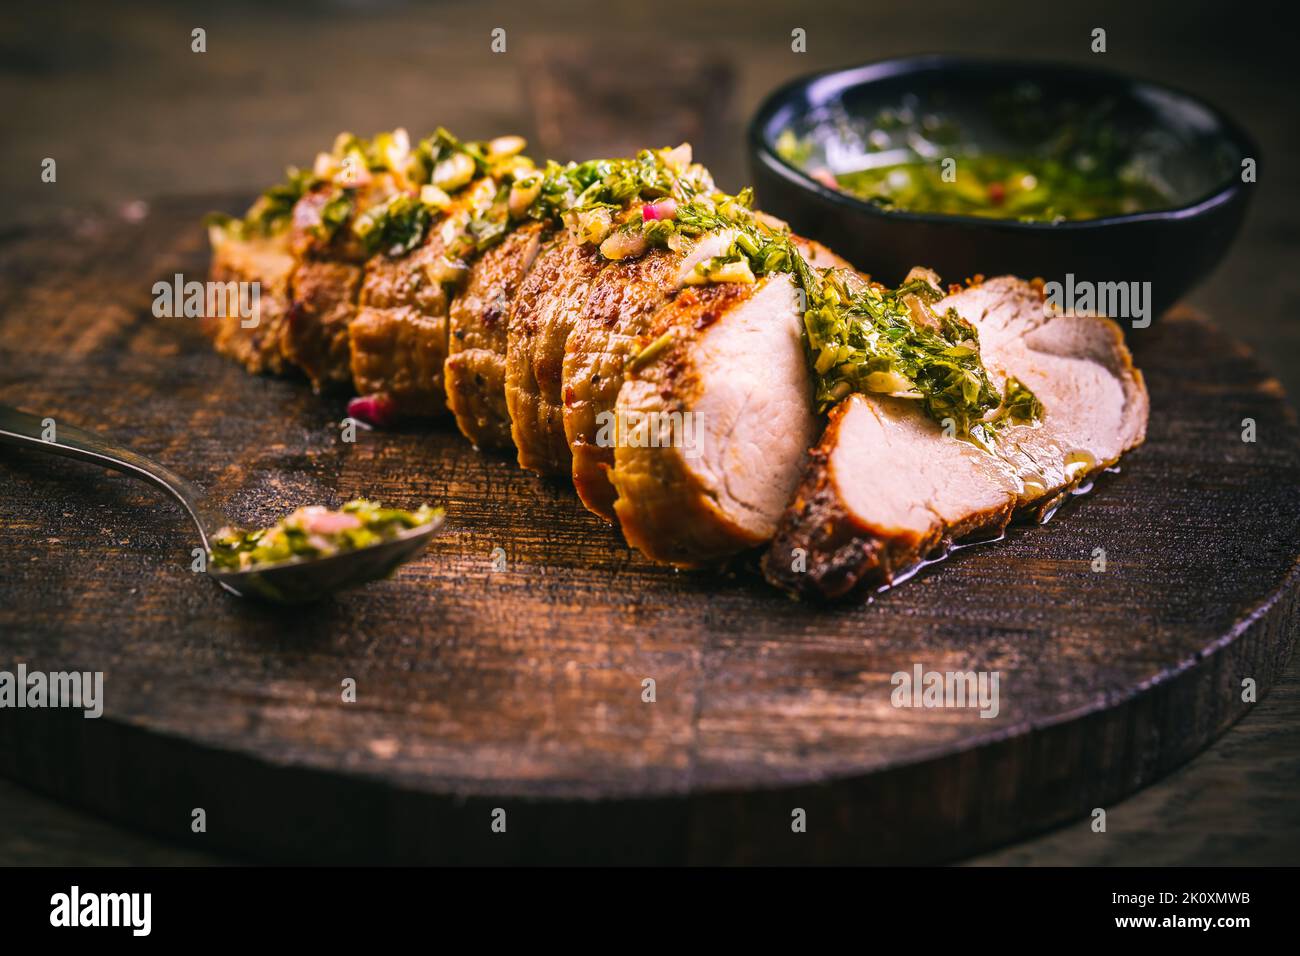 Bistecca di maiale alla griglia fatta in casa con salsa chimichurri verde sul tagliere su sfondo scuro Foto Stock